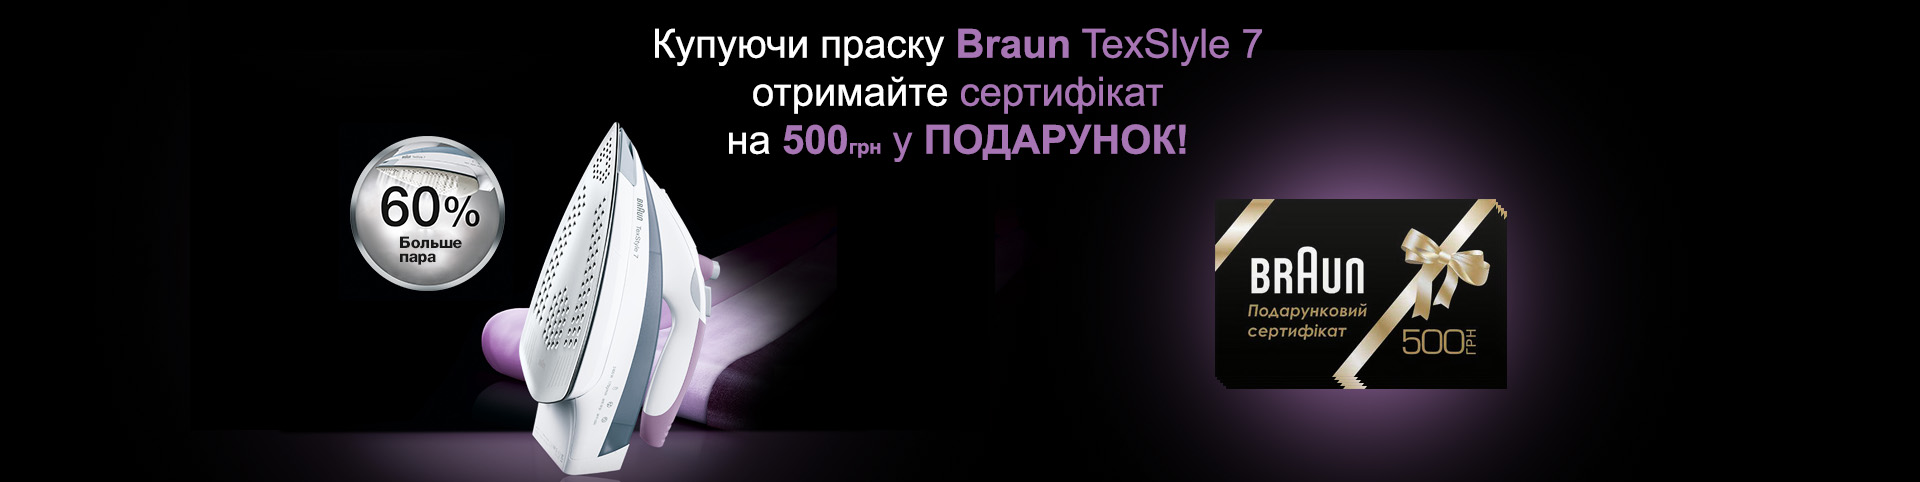 До прасок TexStyle 7 сертифікат Braun на 500 грн у подарунок!